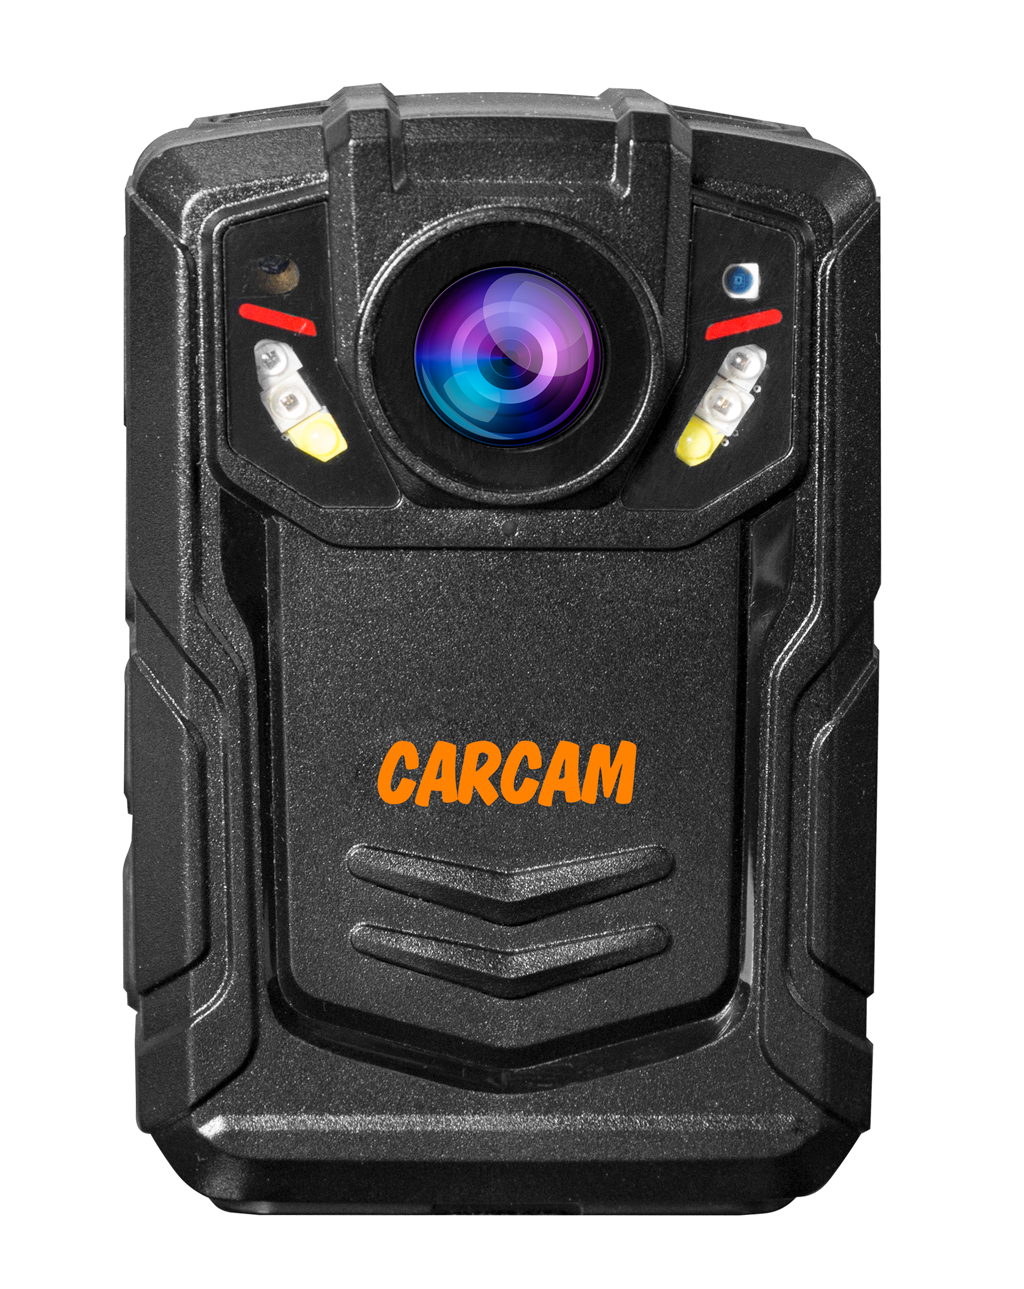 Персональный видеорегистратор CARCAM COMBAT 2S PRO 64GB персональный full hd видеорегистратор с функцией стабилизации изображения carcam combat 2s pro